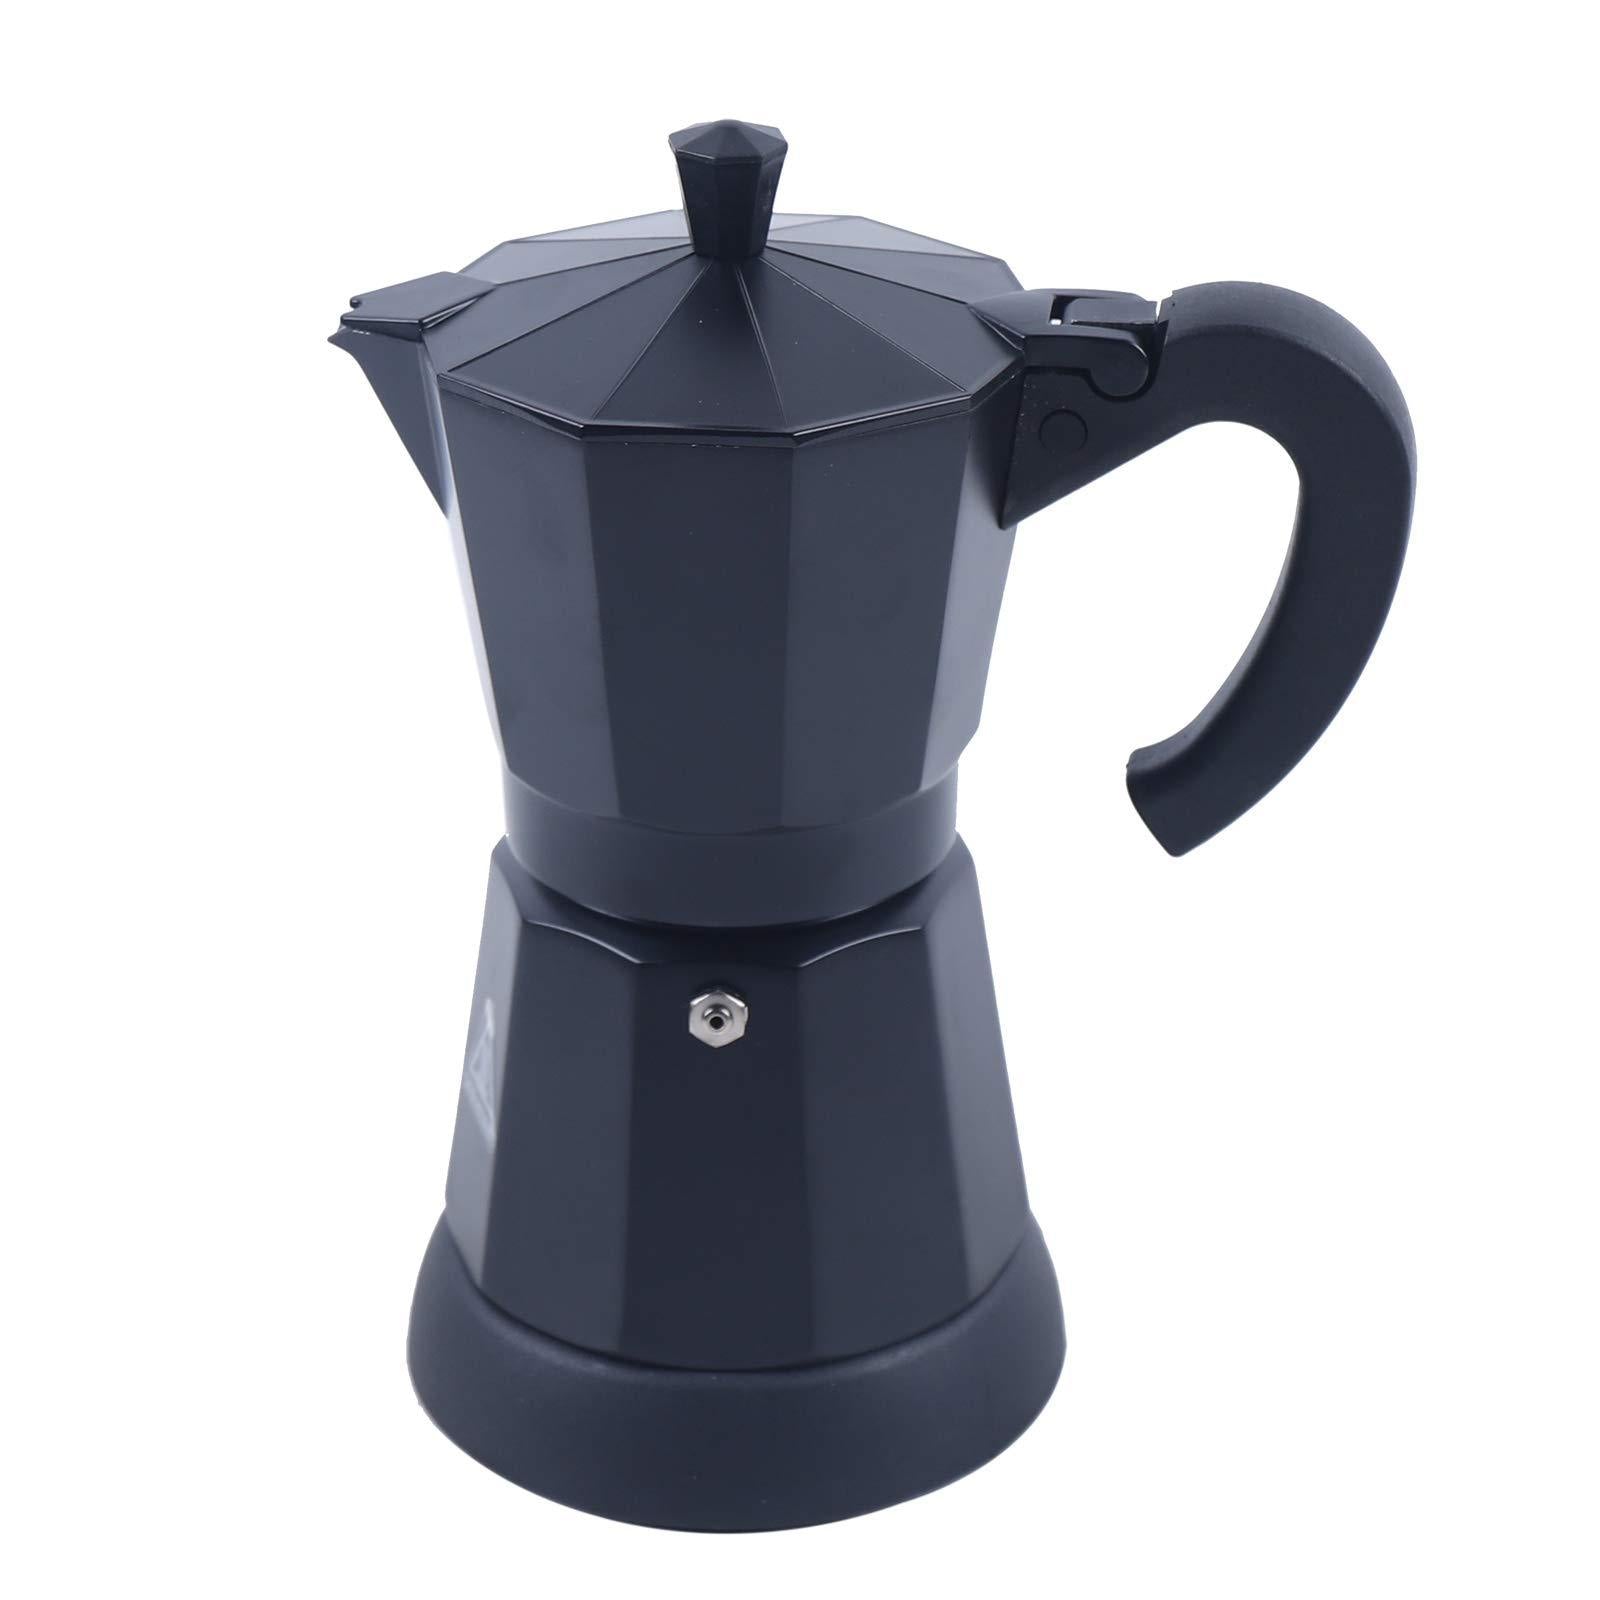 Caffettiera elettrica da 300 ml con fondo separato, filtro caffè lavabile e rimovibile, colore nero, 220-240 V